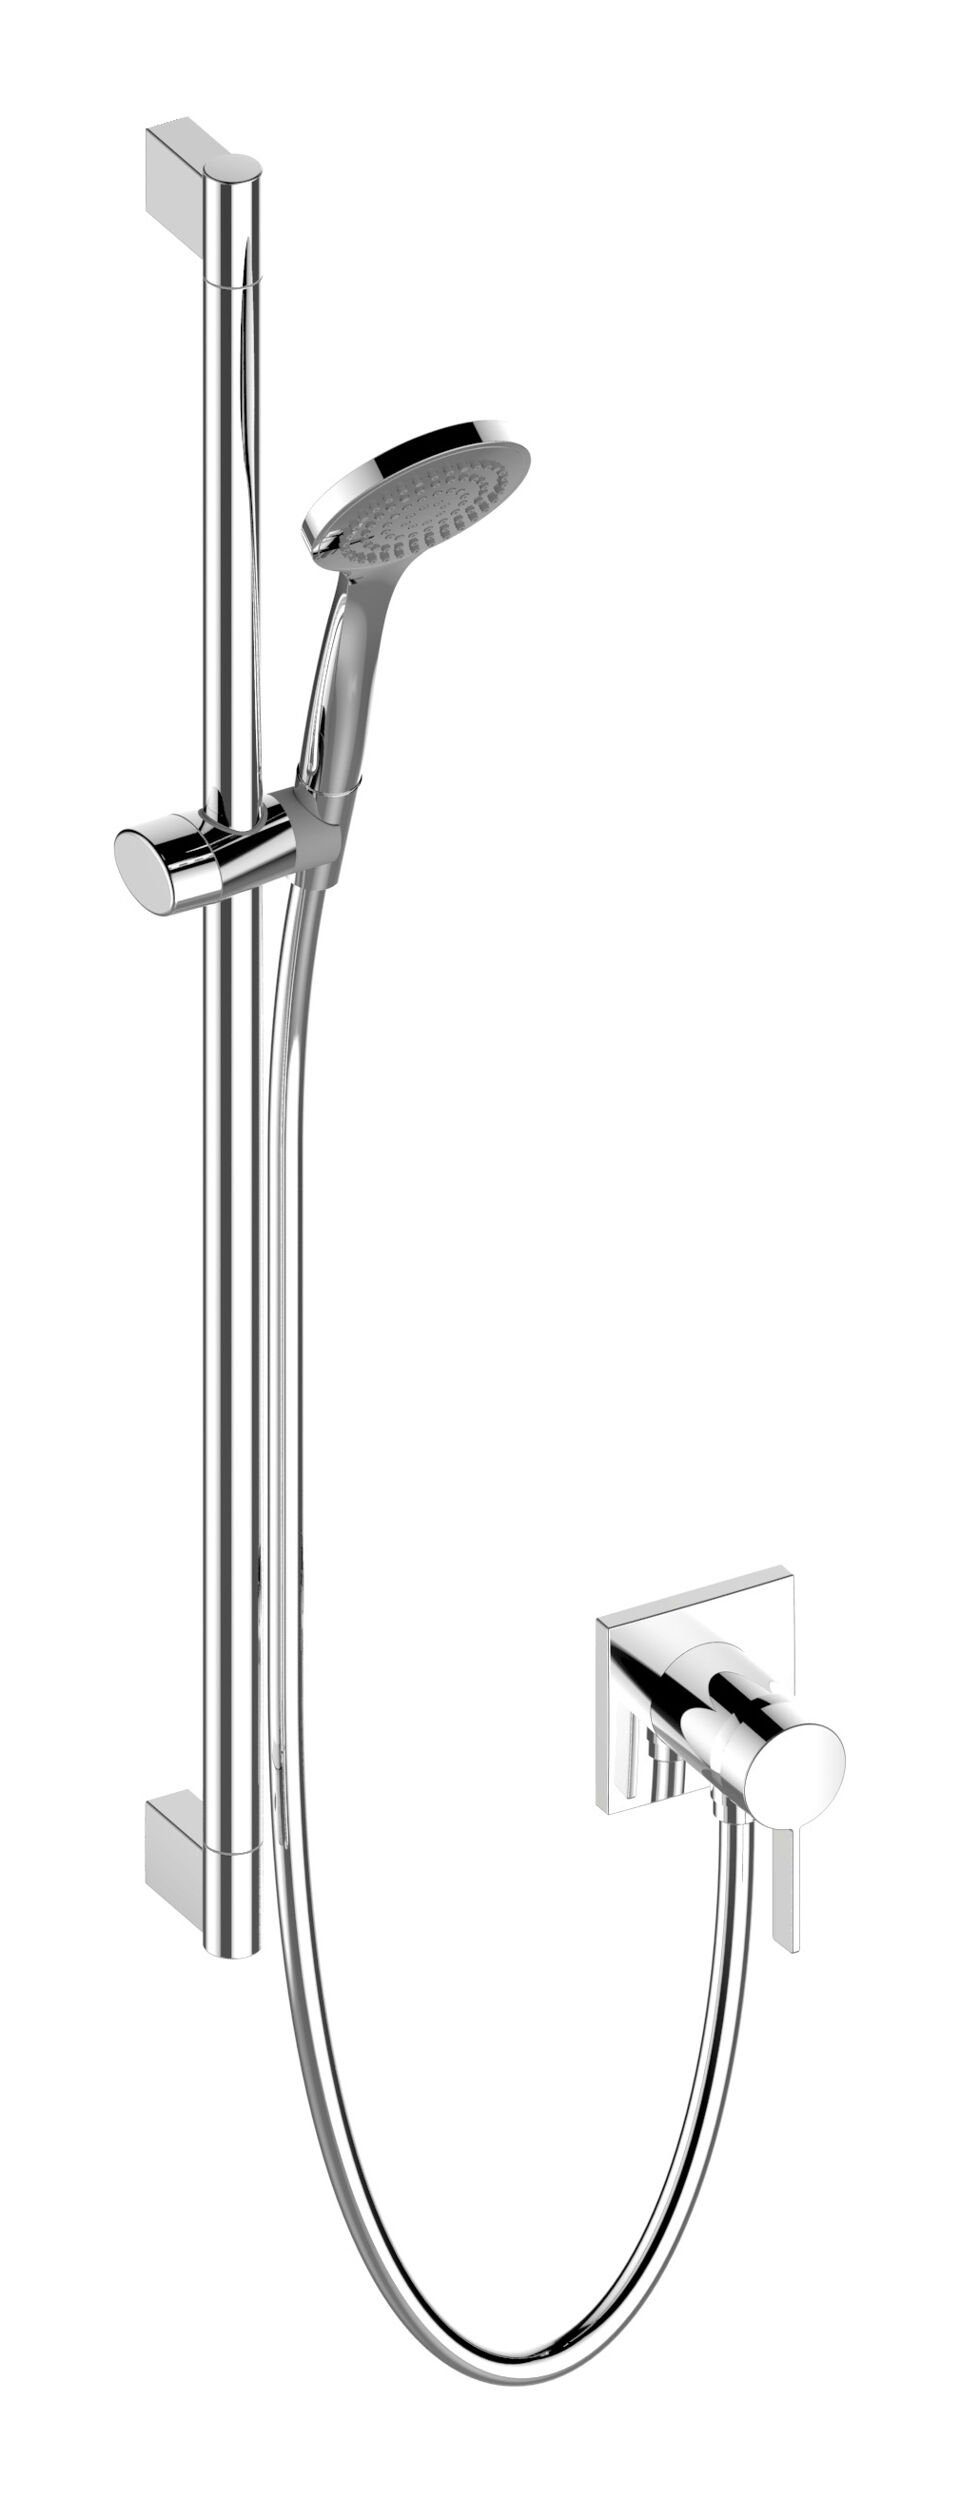 Keuco Brausegarnitur IXMO, Höhe 80 cm, Brause-Set Einhebelmischer für 1 Verbraucher Rosette eckig - Verchromt